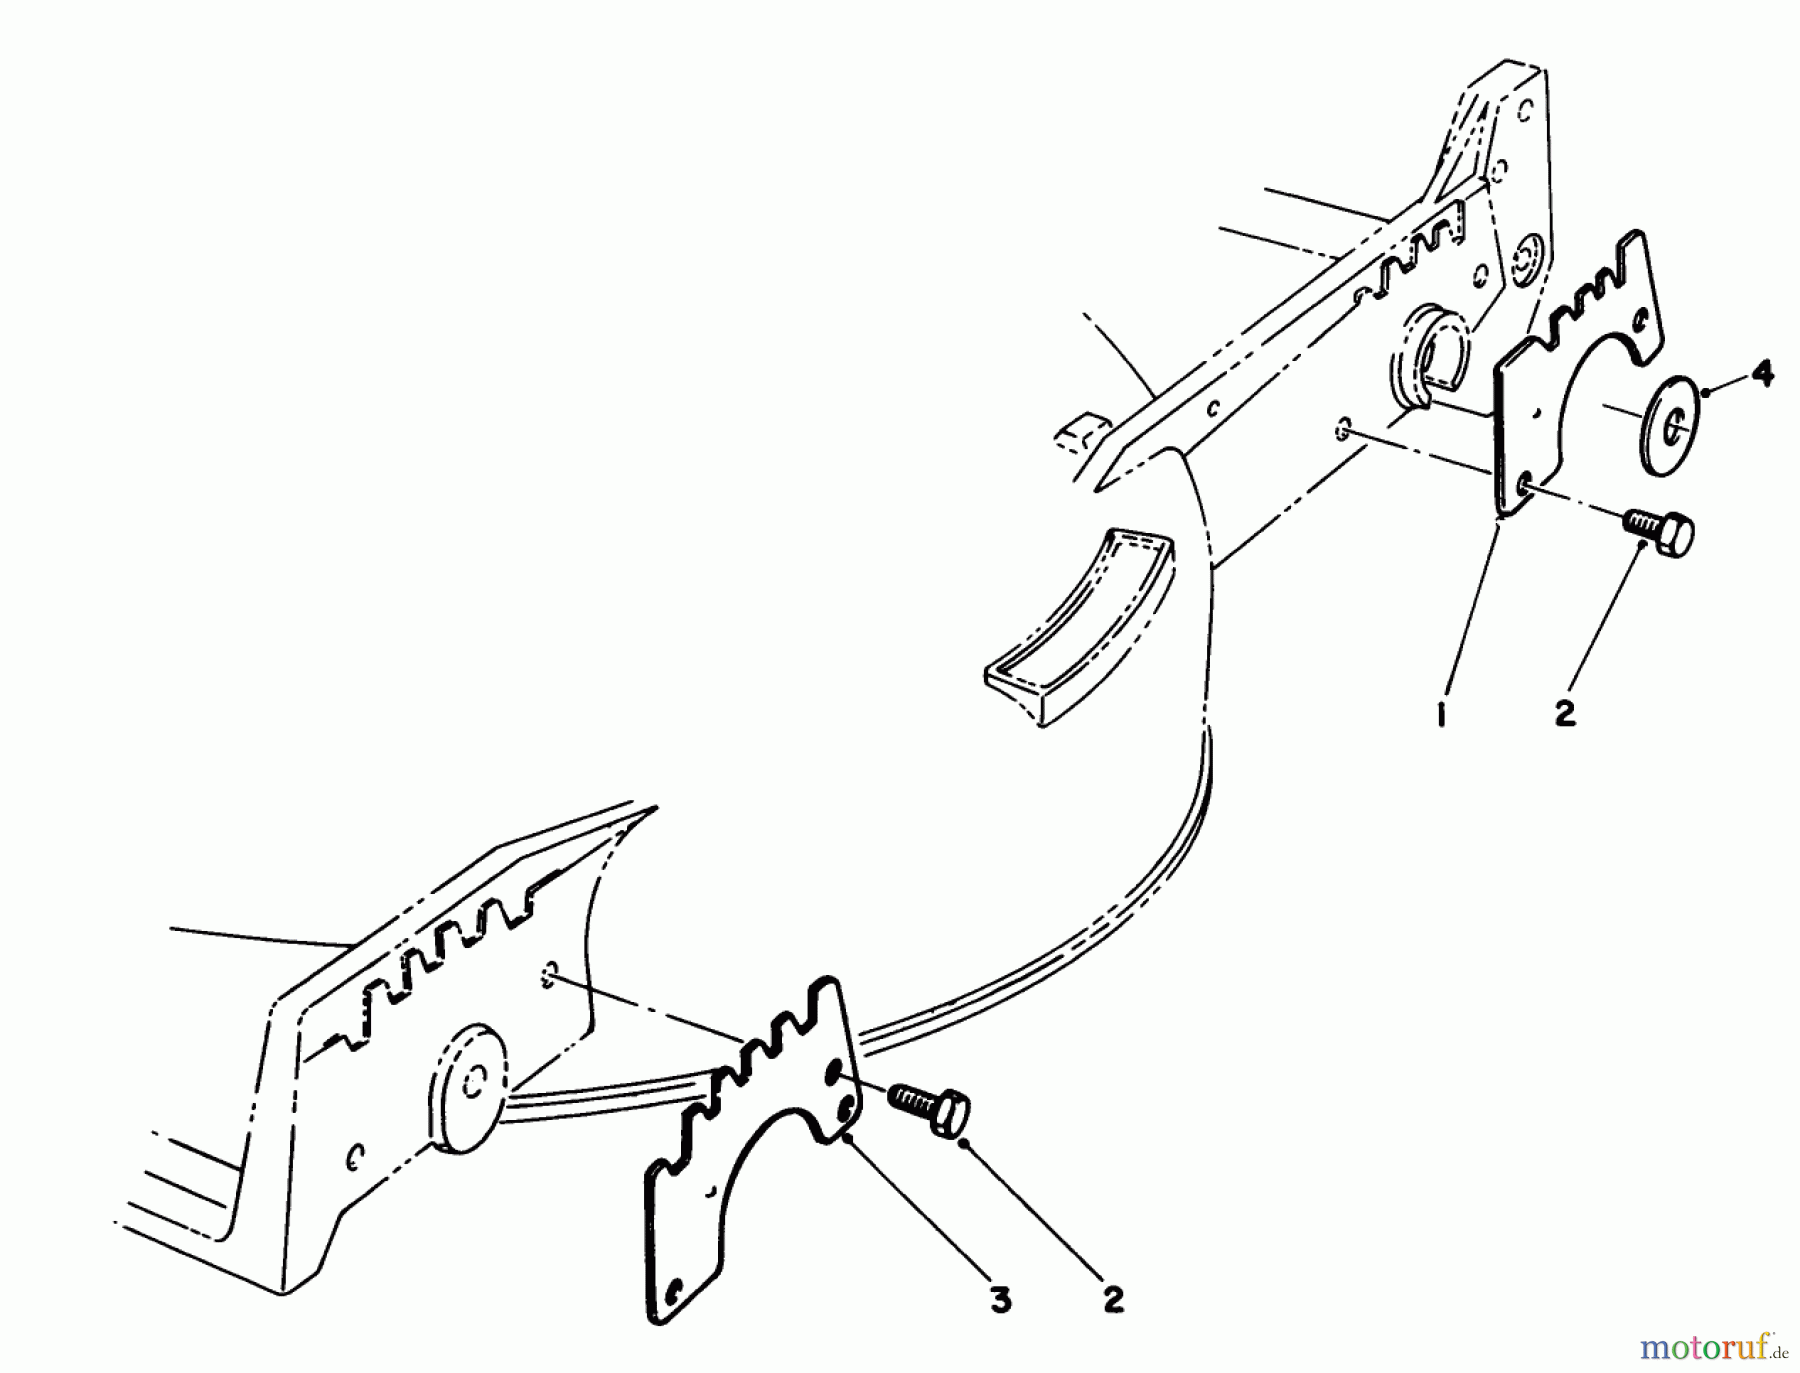  Toro Neu Mowers, Walk-Behind Seite 1 20588C - Toro Lawnmower, 1989 (9000001-9999999) WEAR PLATE KIT MODEL NO. 49-4080 (OPTIONAL)